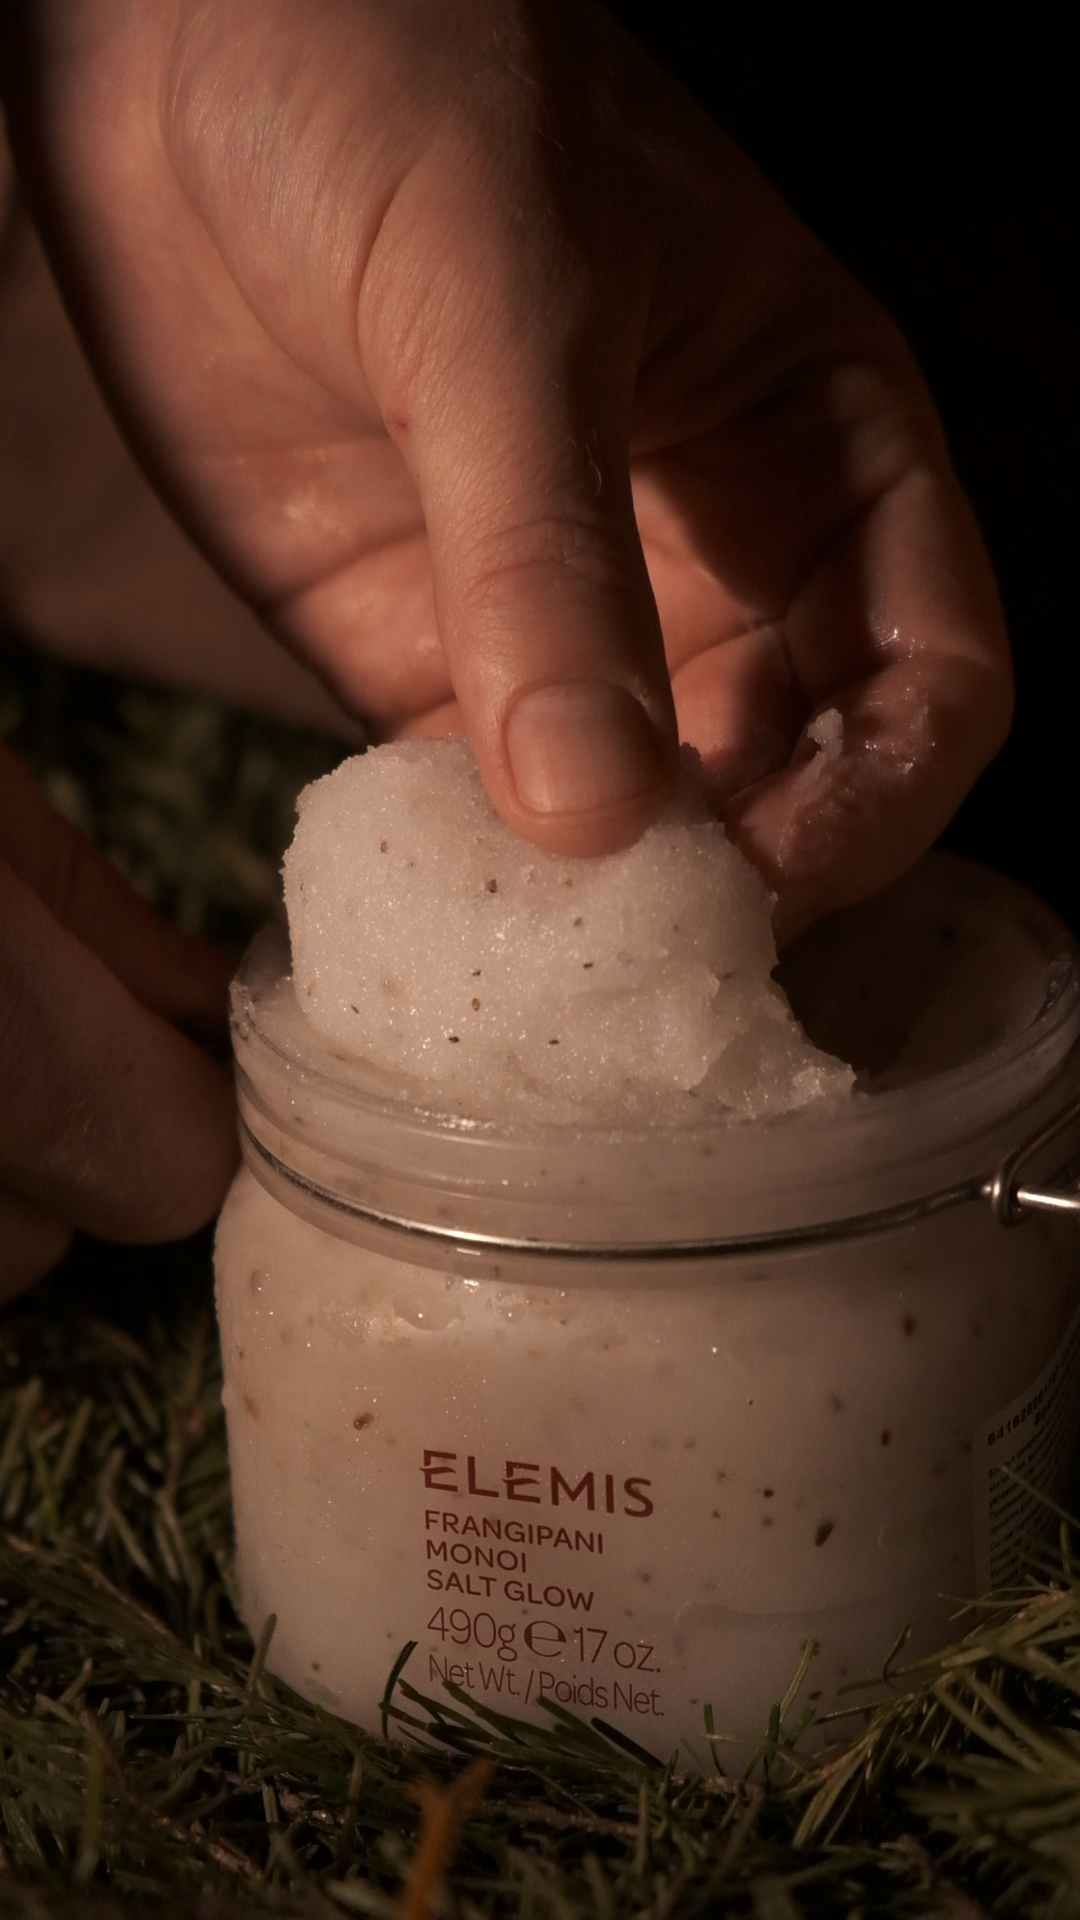 Комплекс Siberia и бренд Elemis запускают авторскую программу женского банного спа (фото 4)